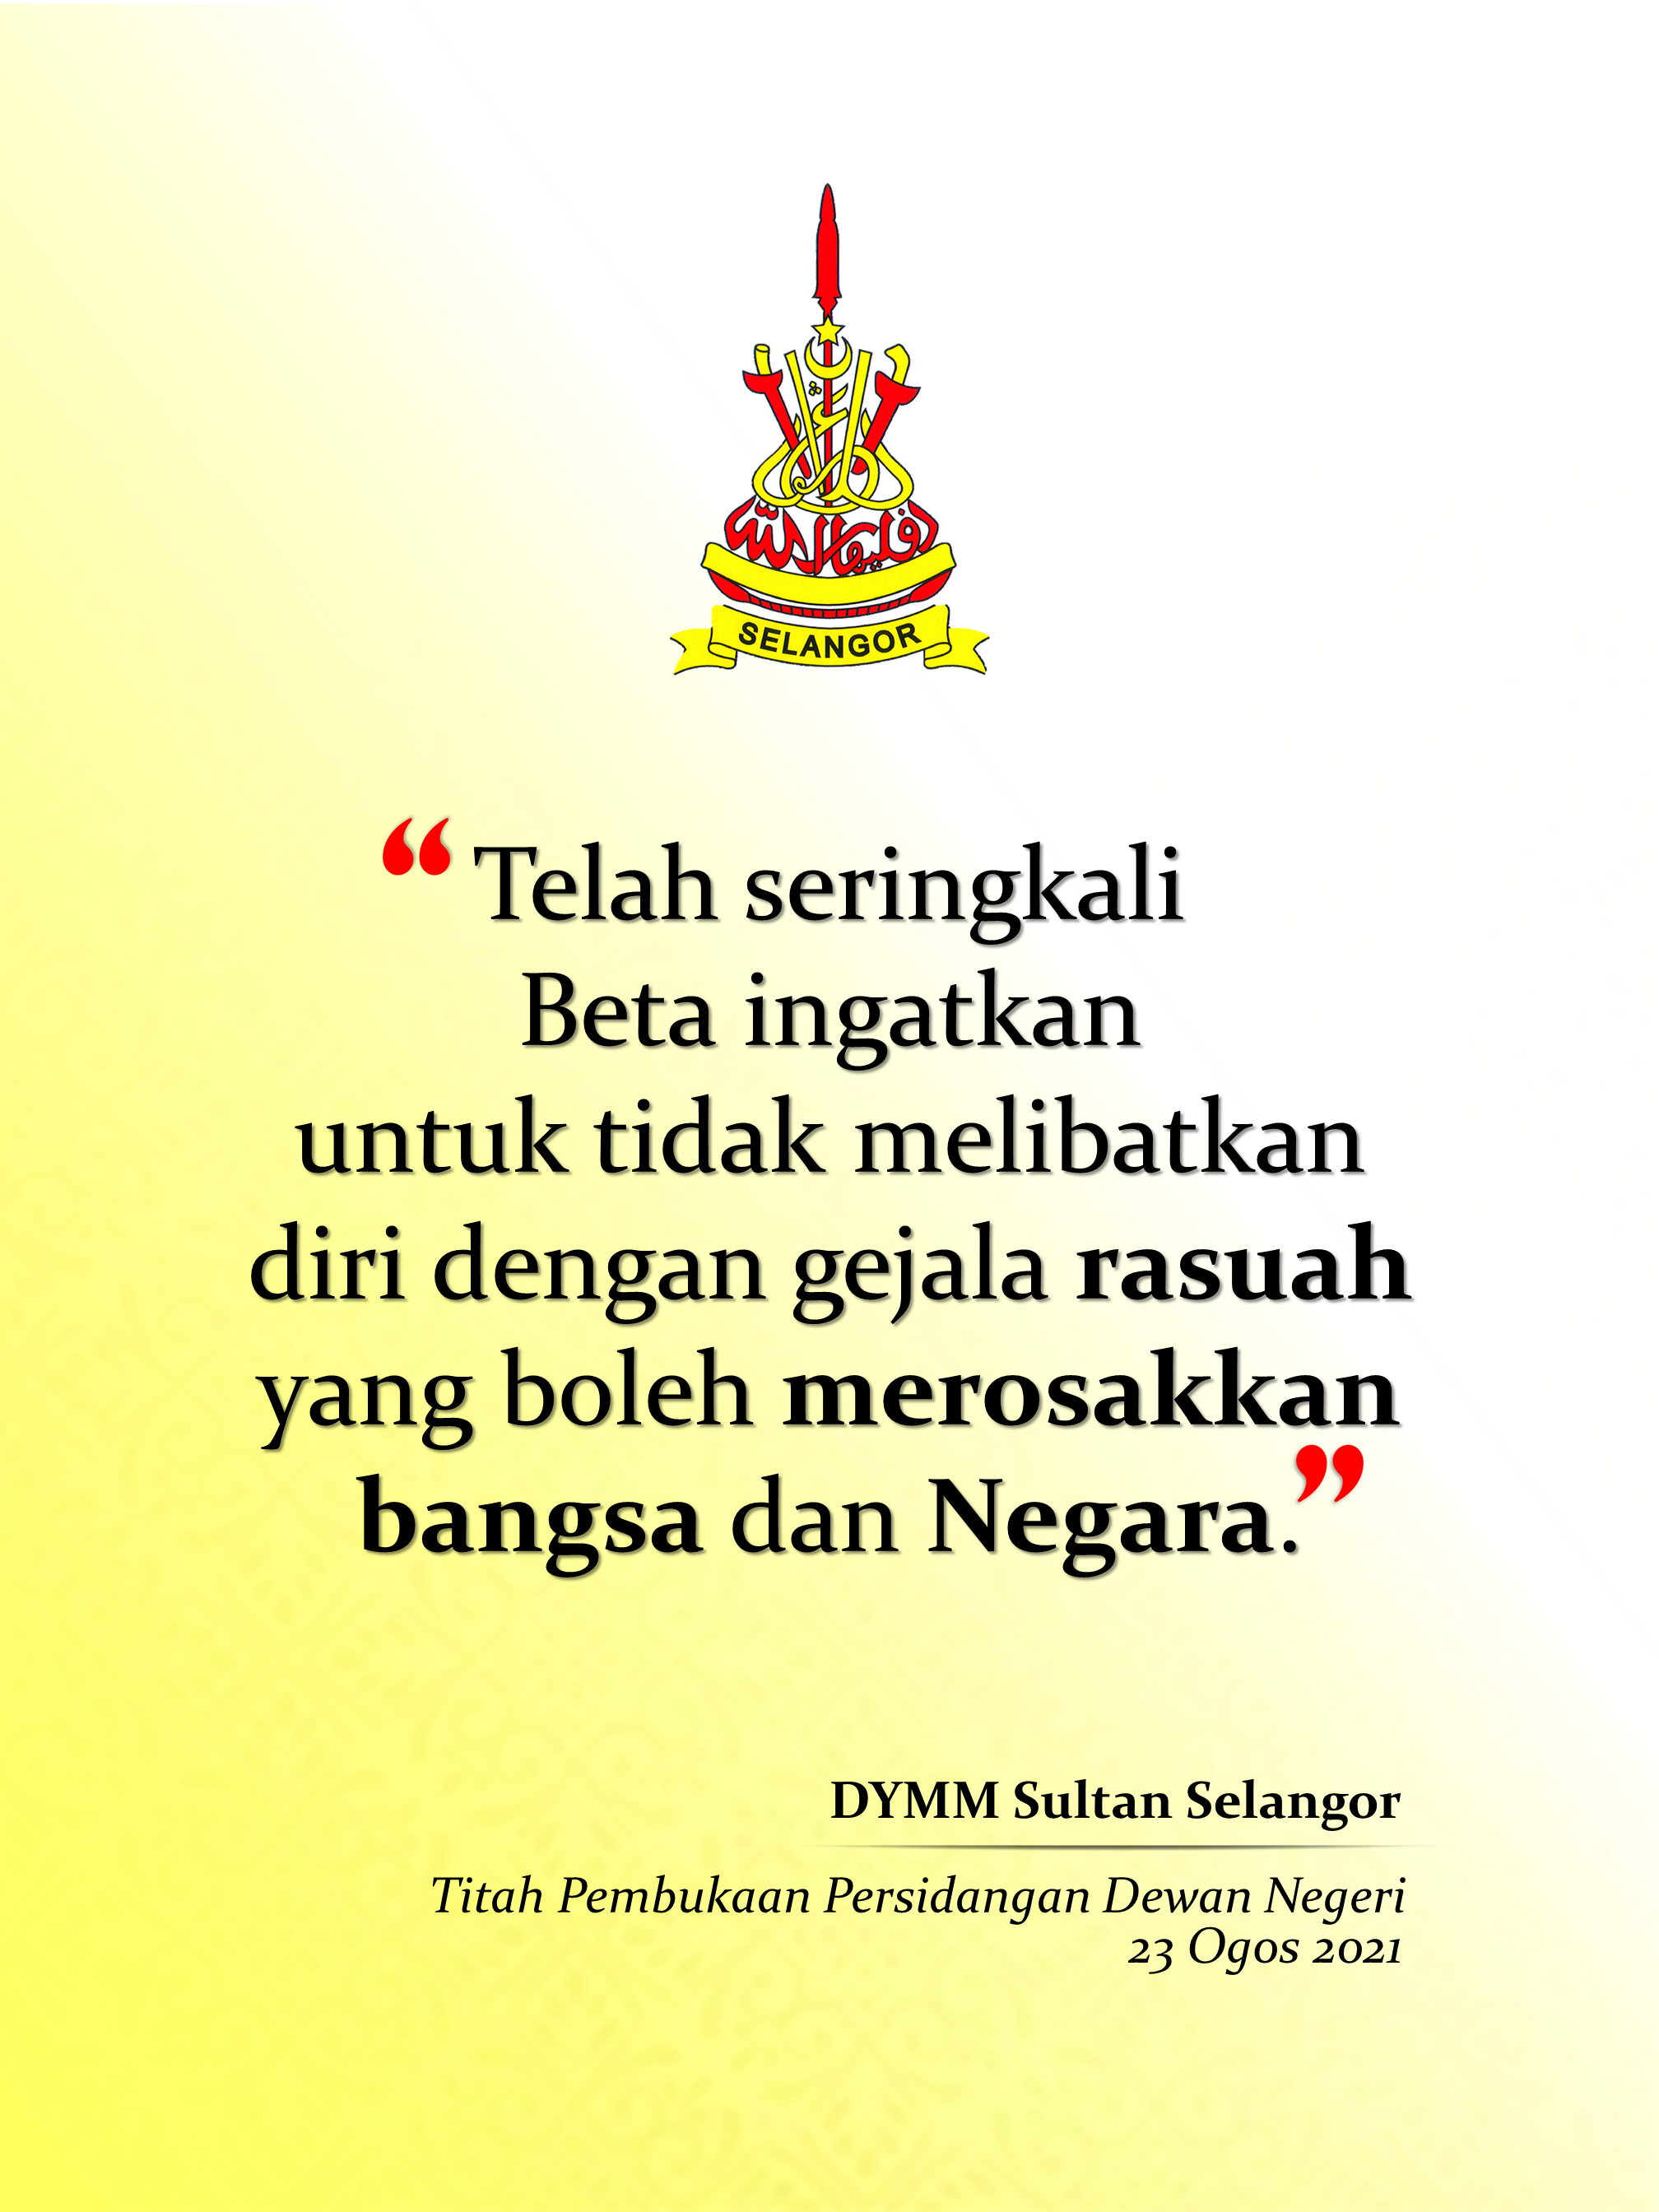 Petikan Titah DYMM Sultan Selangor 23 Ogos 2021